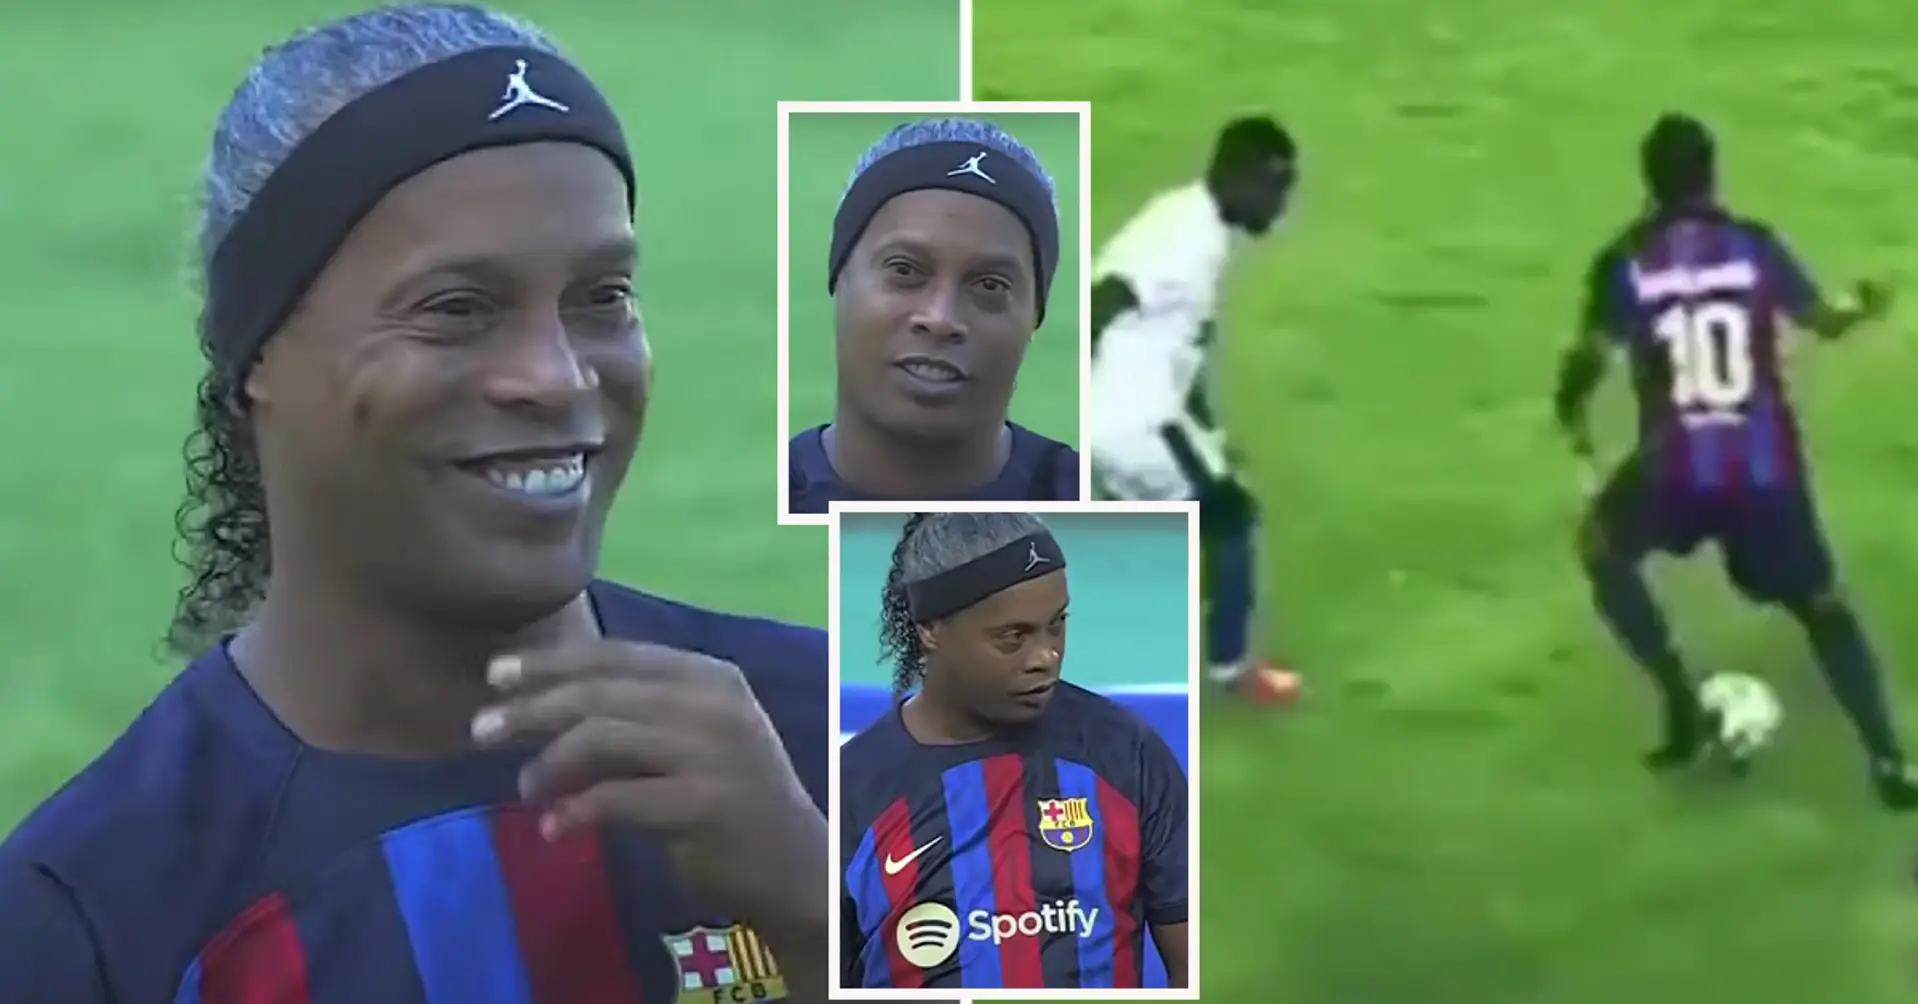 Immer noch derselbe Zauberer: Ronaldinho gab eine Show in Sambia (!) - auch mit 43 Jahren ist er nicht zu stoppen